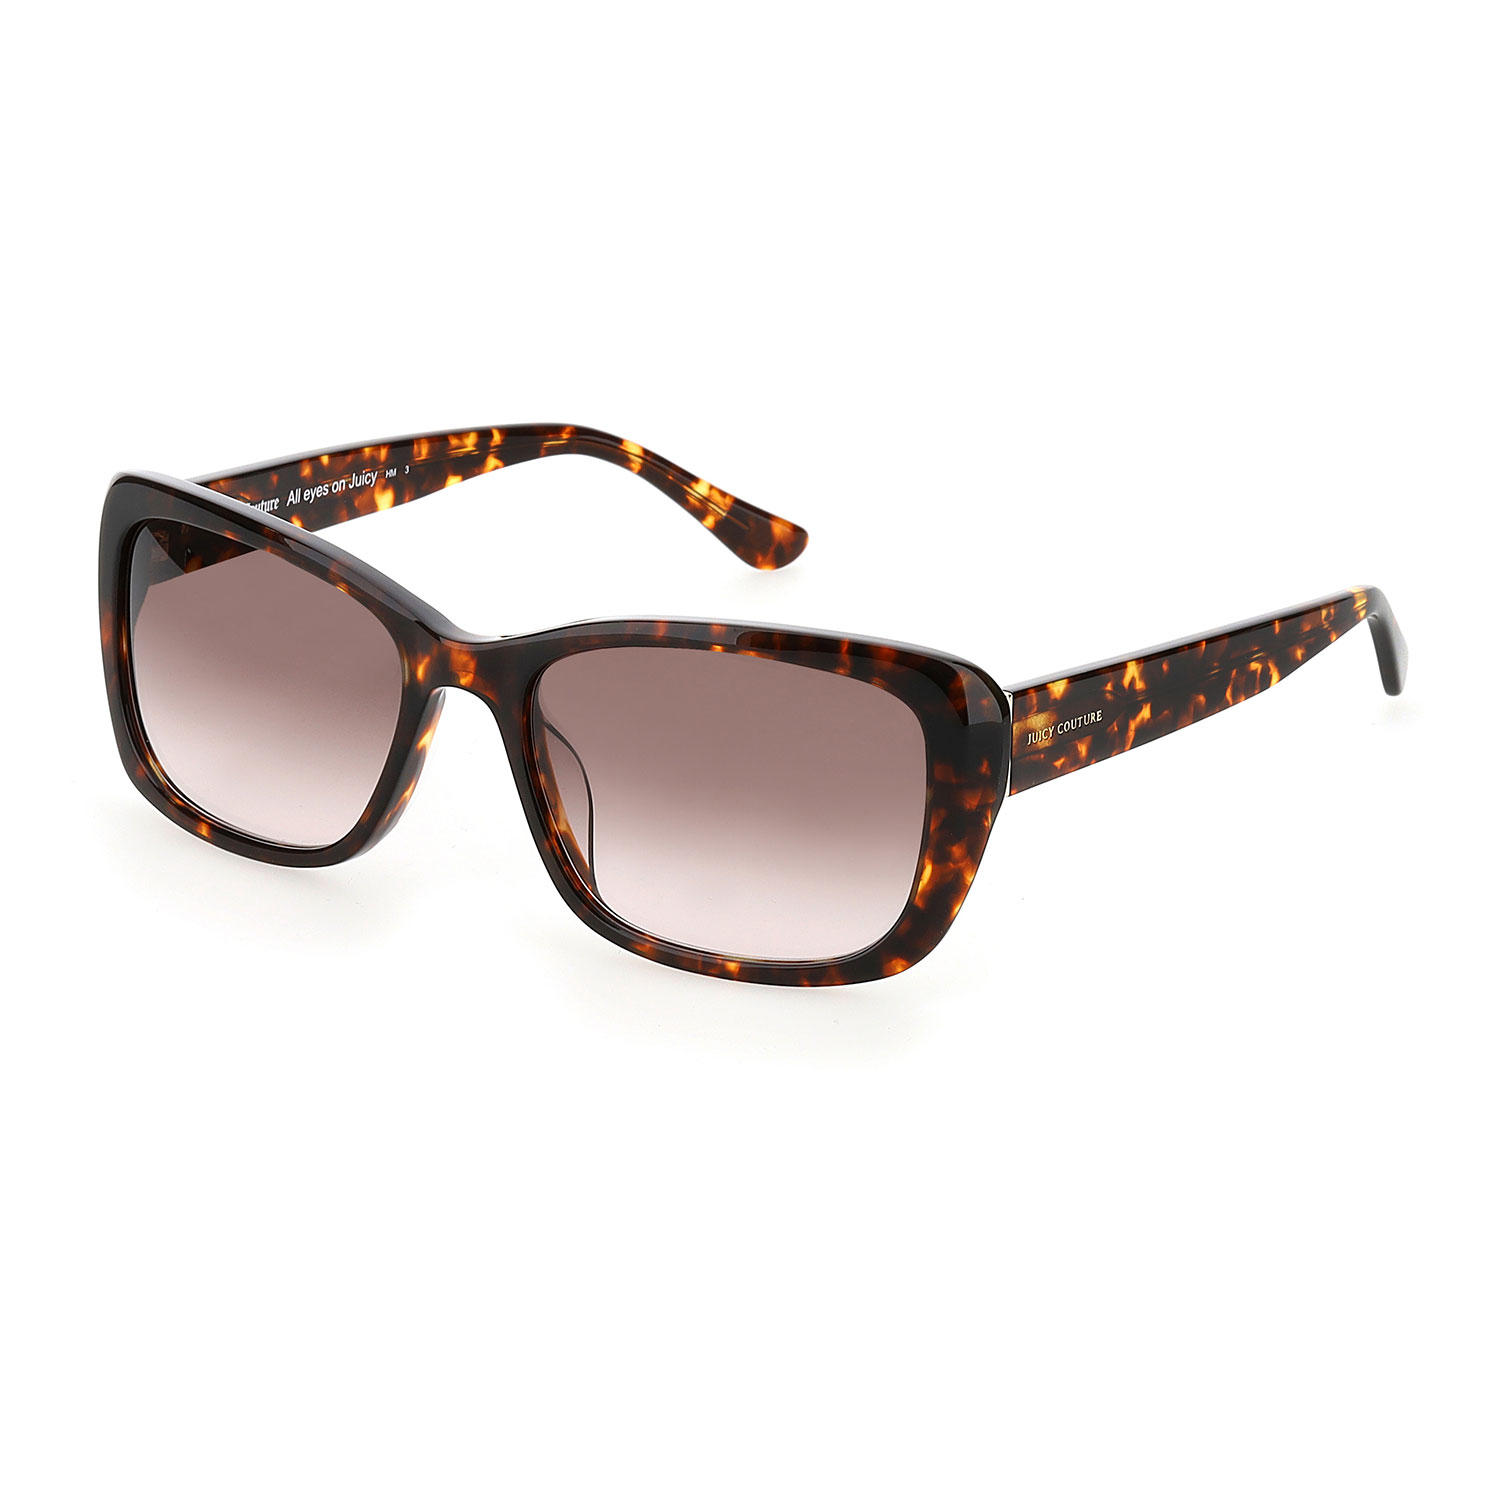 Juicy Couture 613/g/s Sunglasses, Multi Focus